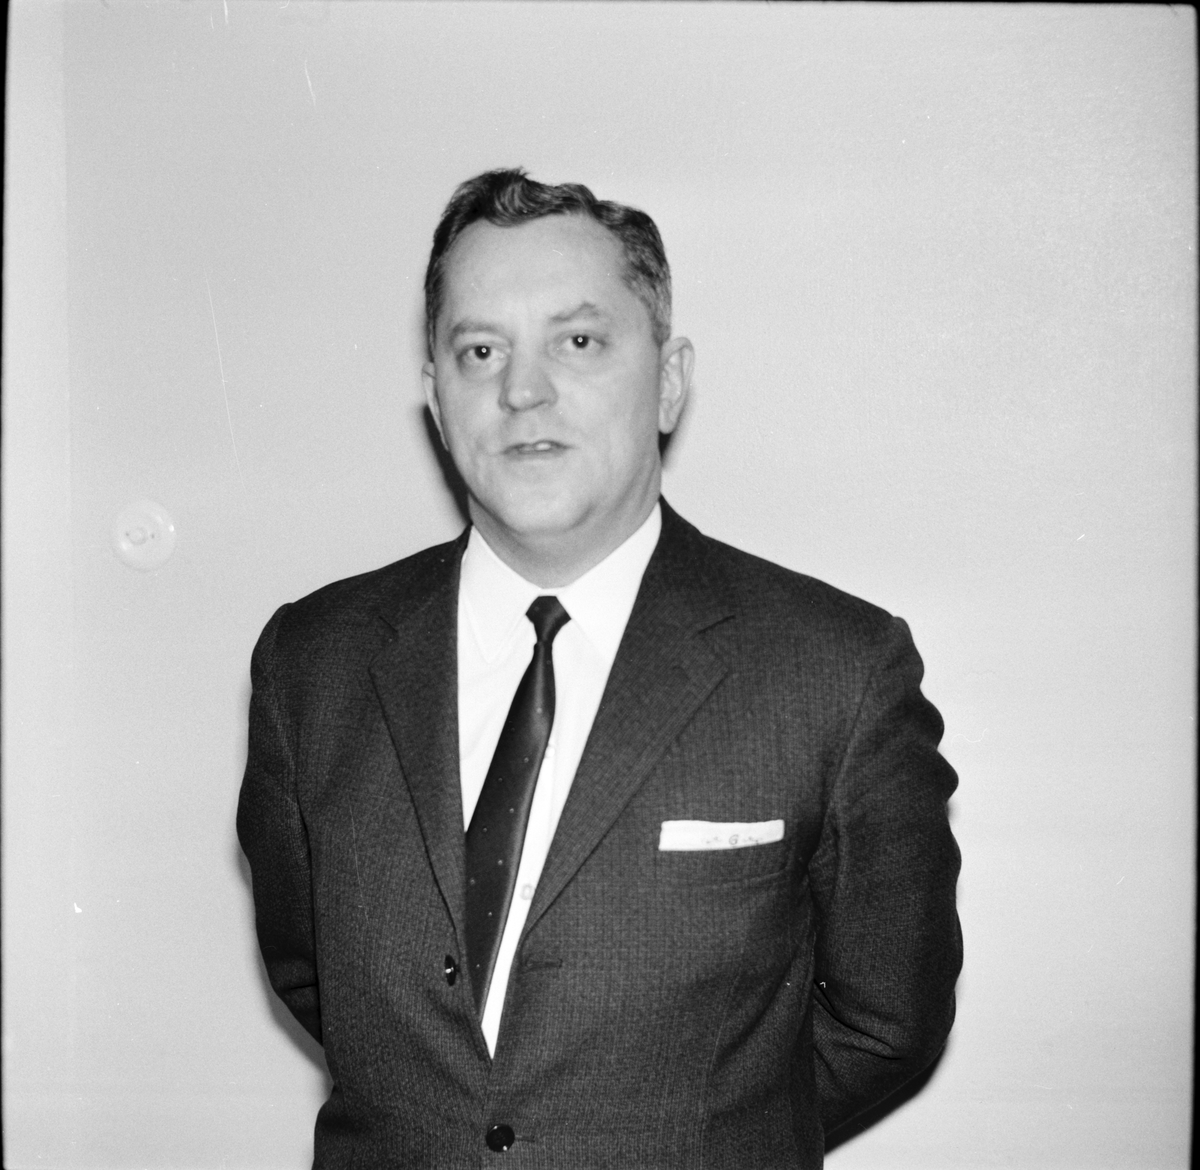 Arbrå,
Thage Guldbrandtsson,socialchef,
Januari 1969